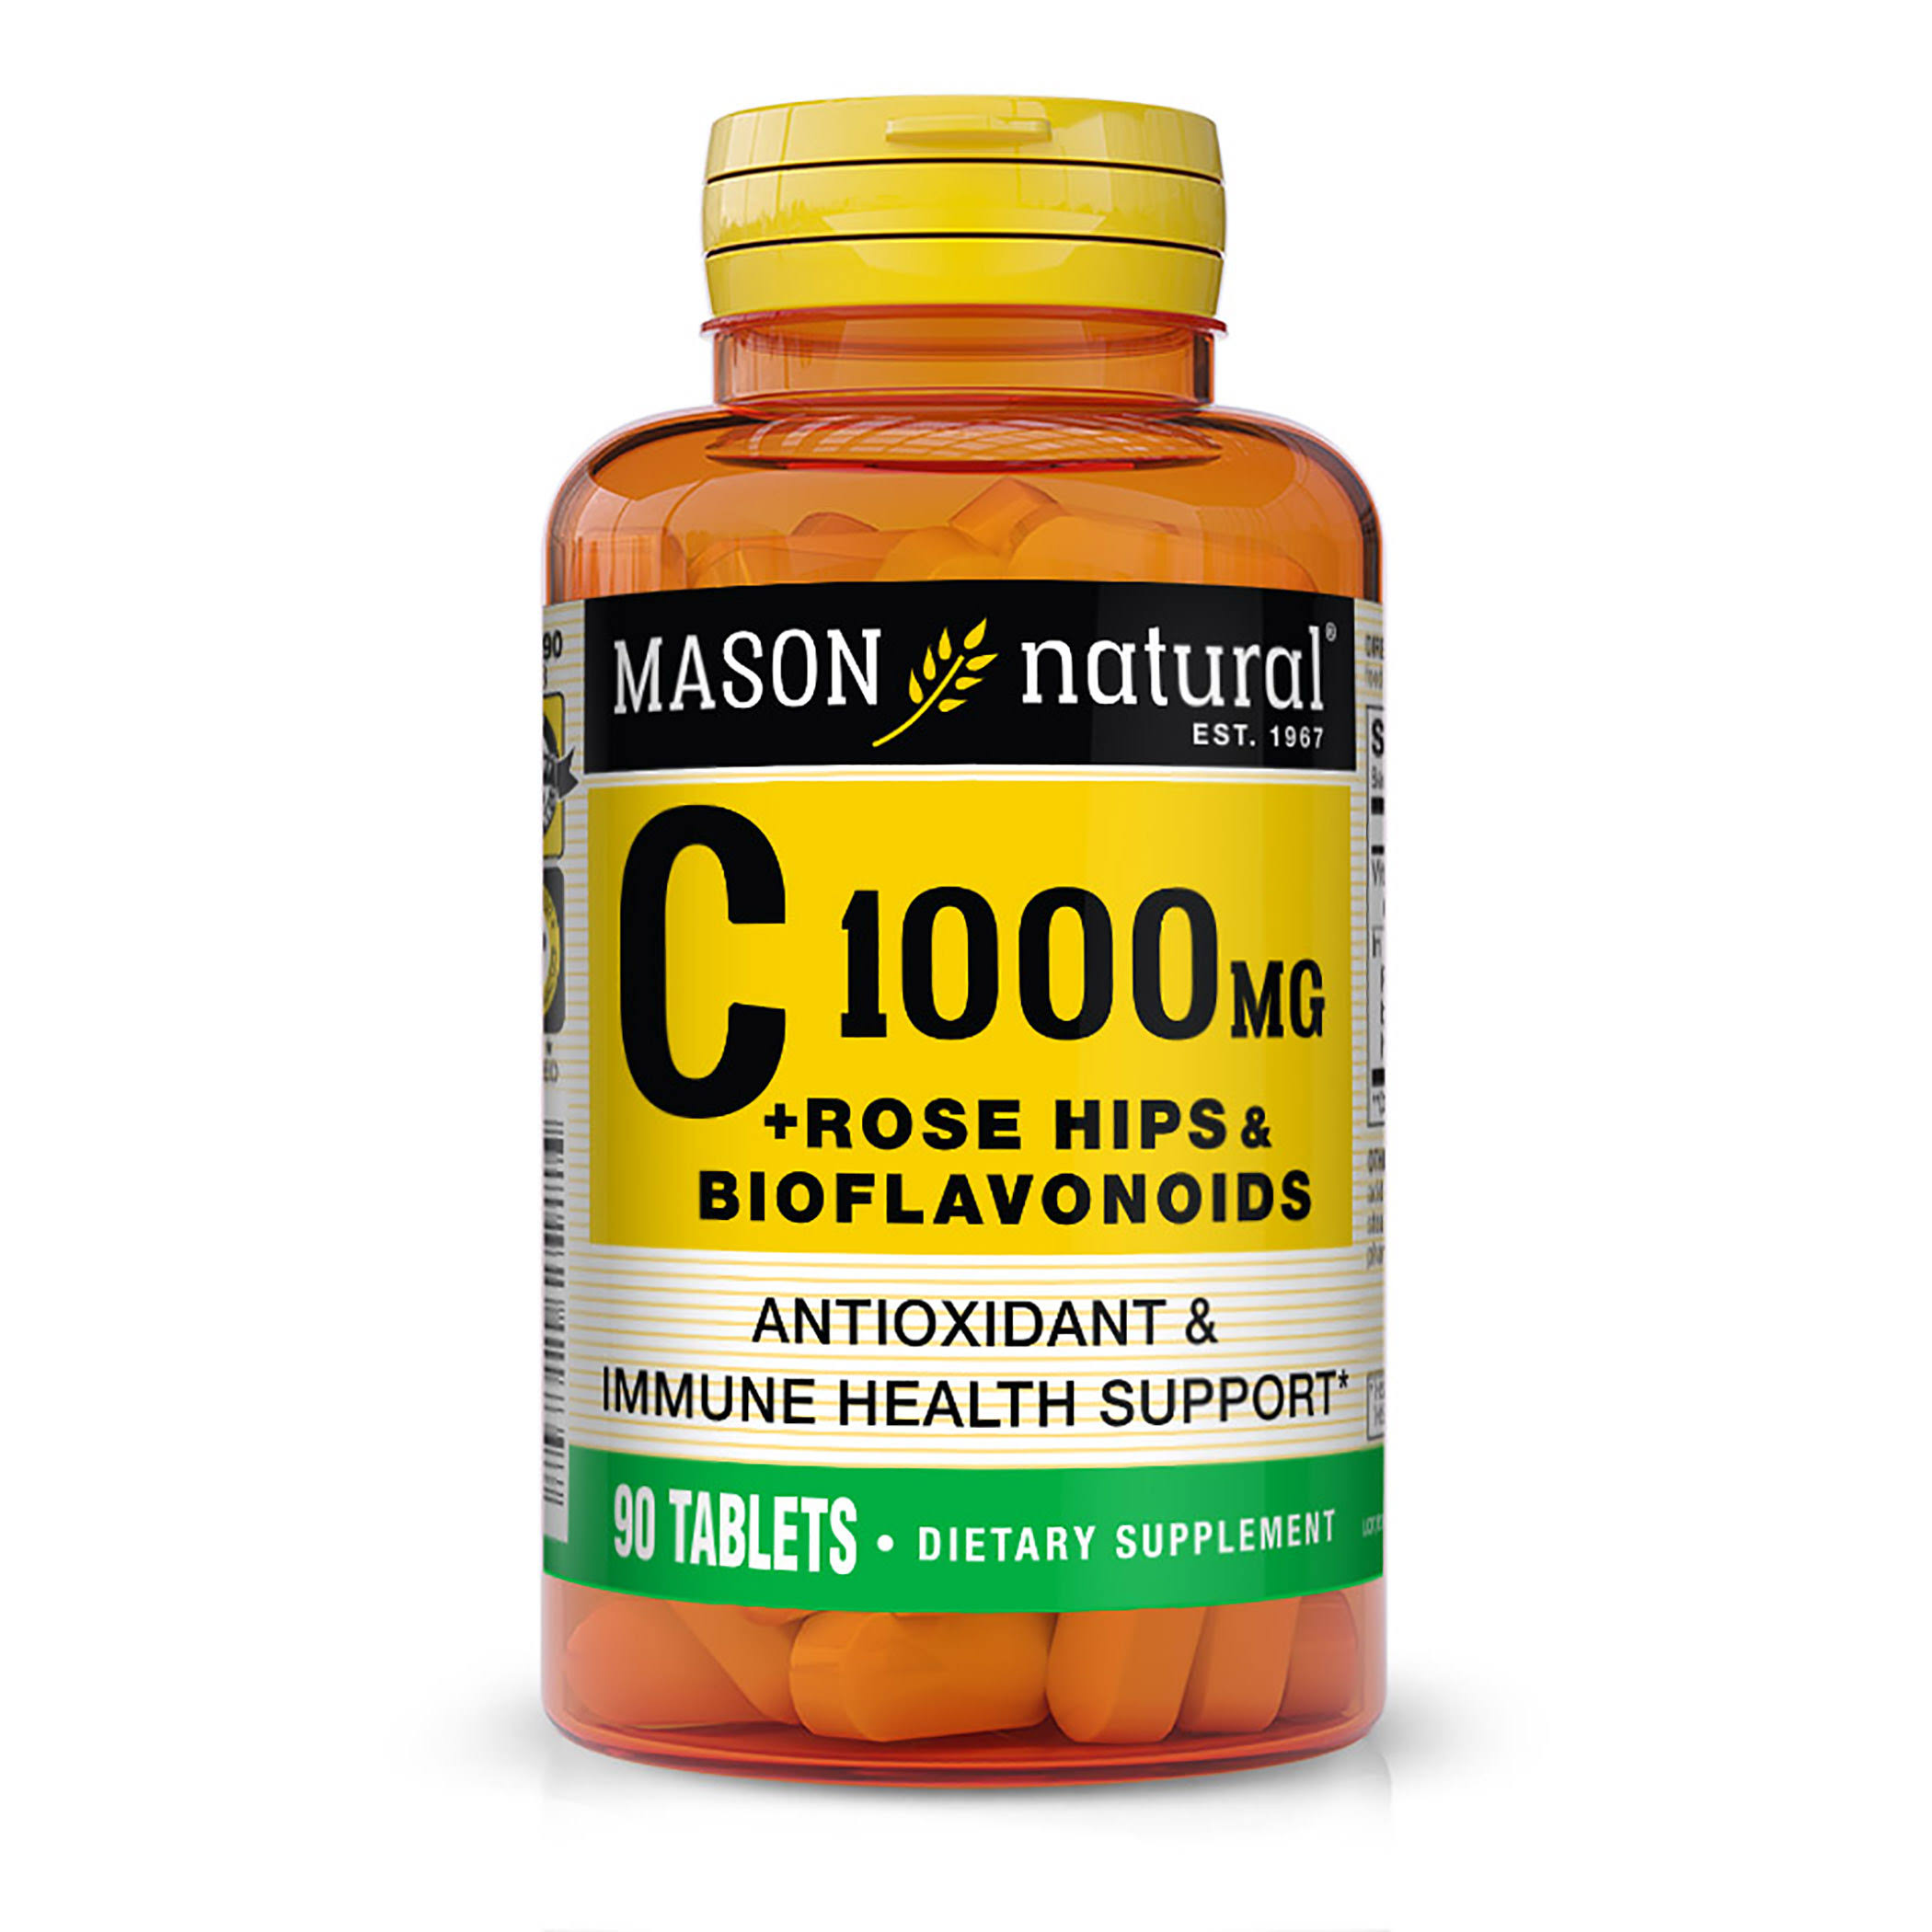 Mason Natural Vitamin C Supplement - 1000mg, 90 Tablets